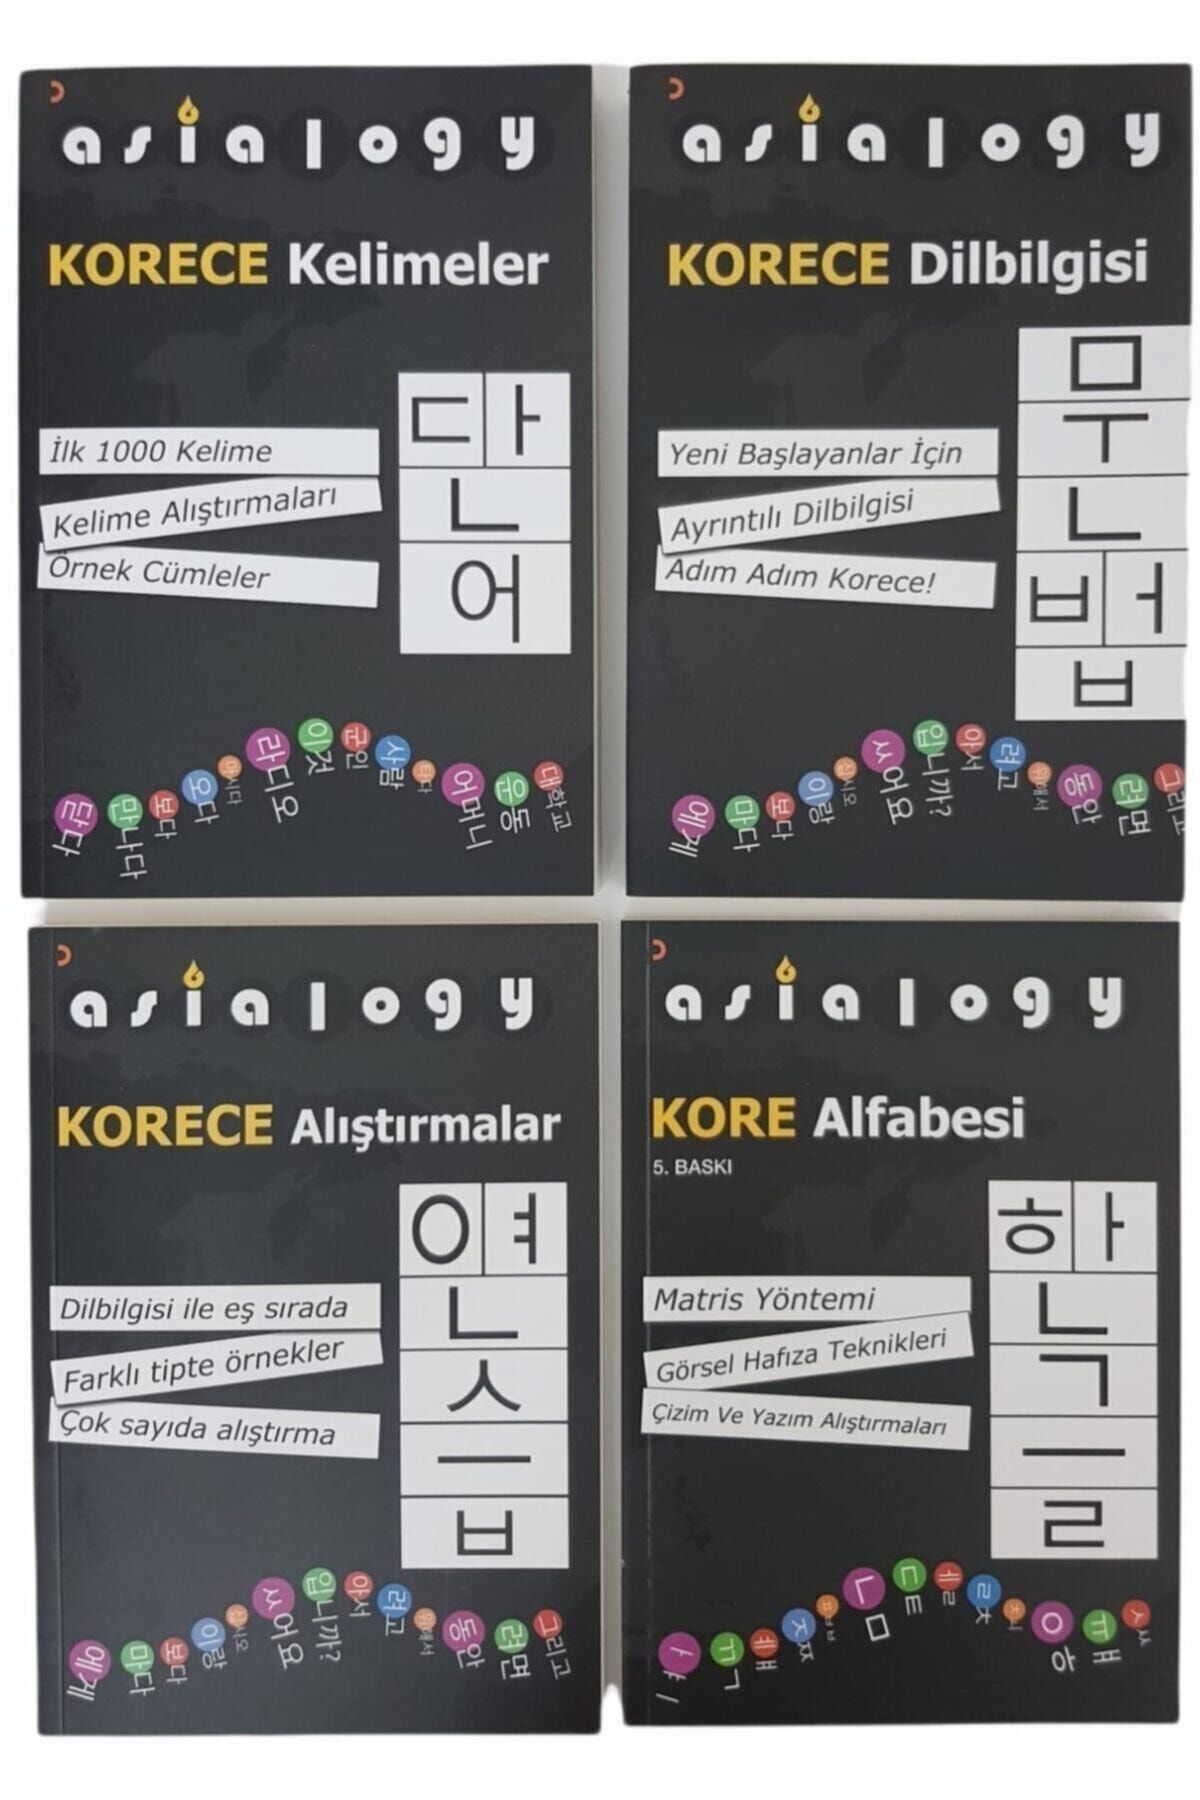 Cinius Yayınları Asialogy Korece Kelimeler,alfabe,dil Bilgisi Ve Alıştırmalar (abdurrahman Esendemir) 4 Kitap Set